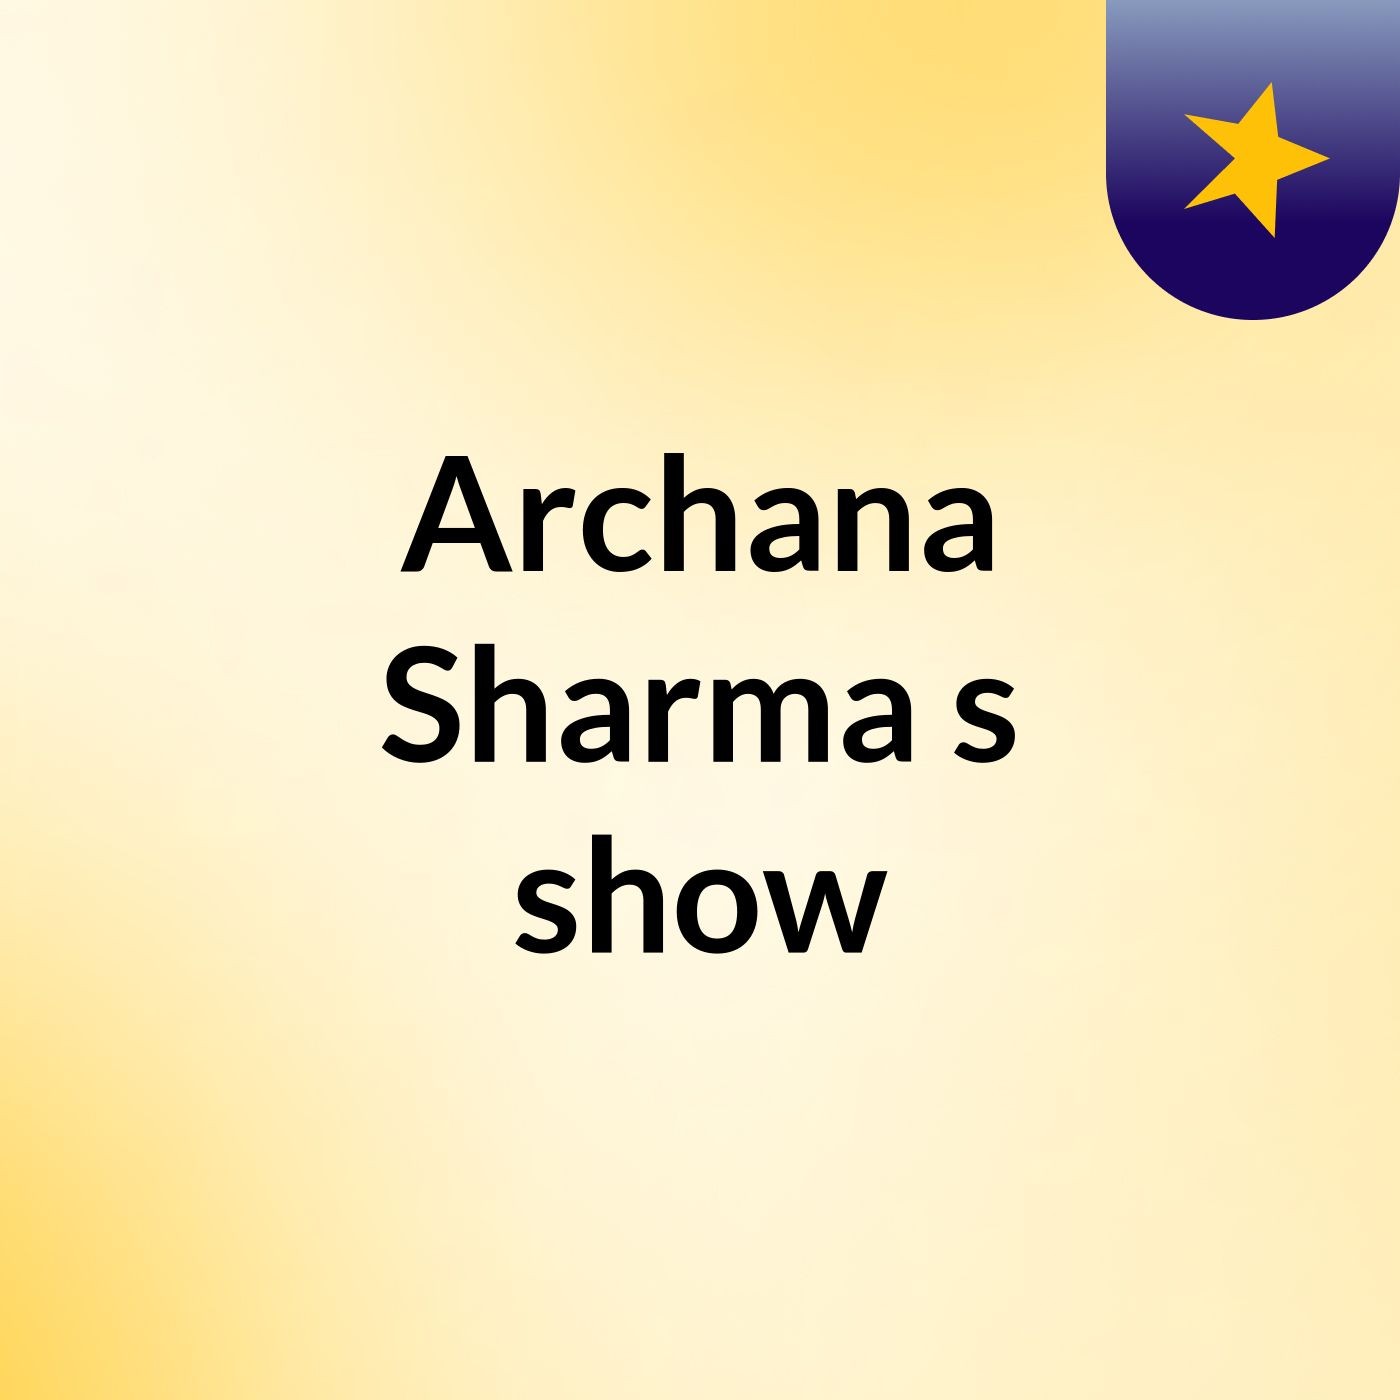 Archana Sharma's show